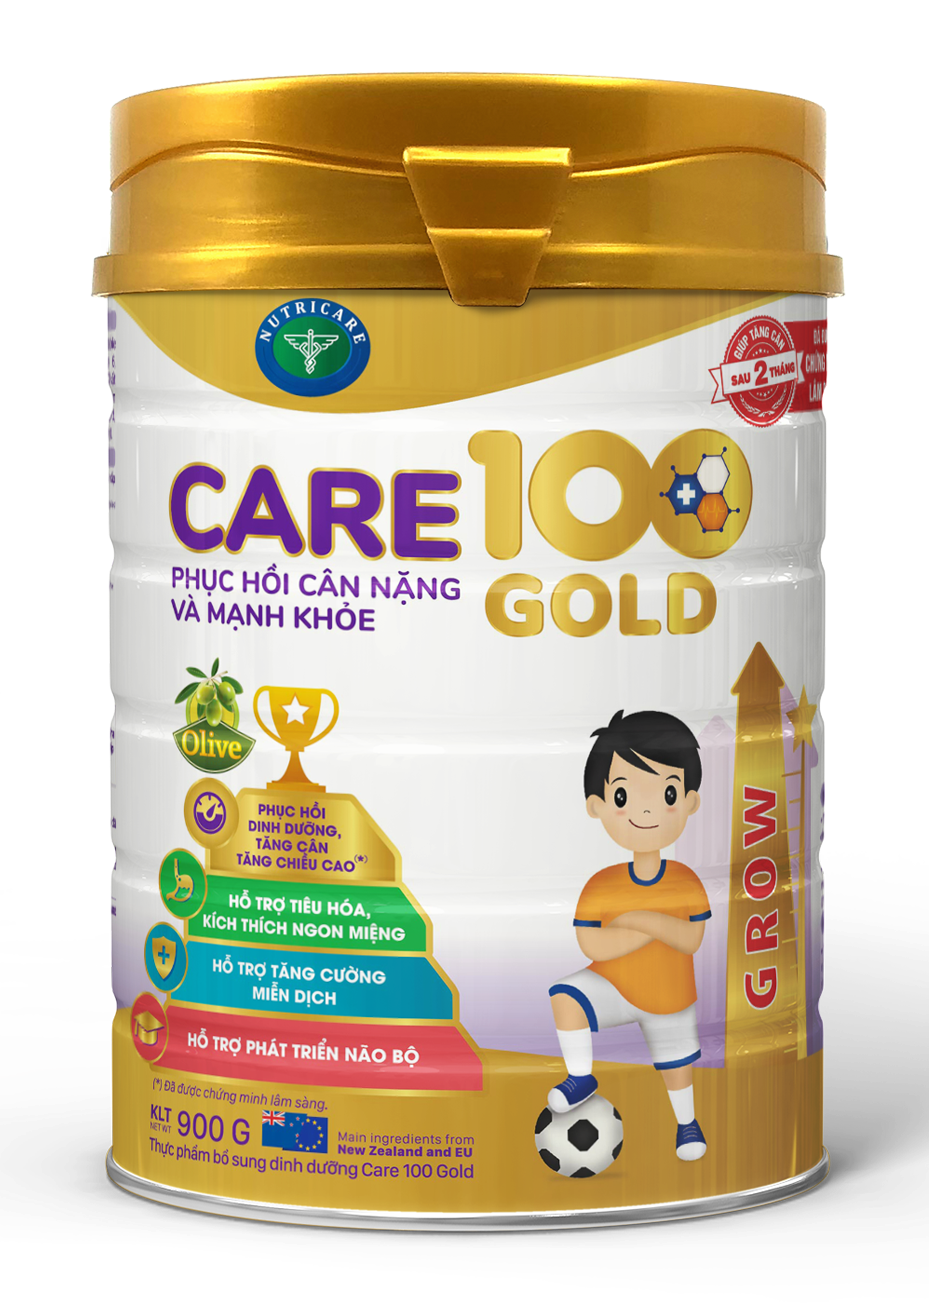 Sữa Nutricare Care 100 Gold cho trẻ biếng ăn suy dinh dưỡng 1-10 tuổi (900g)